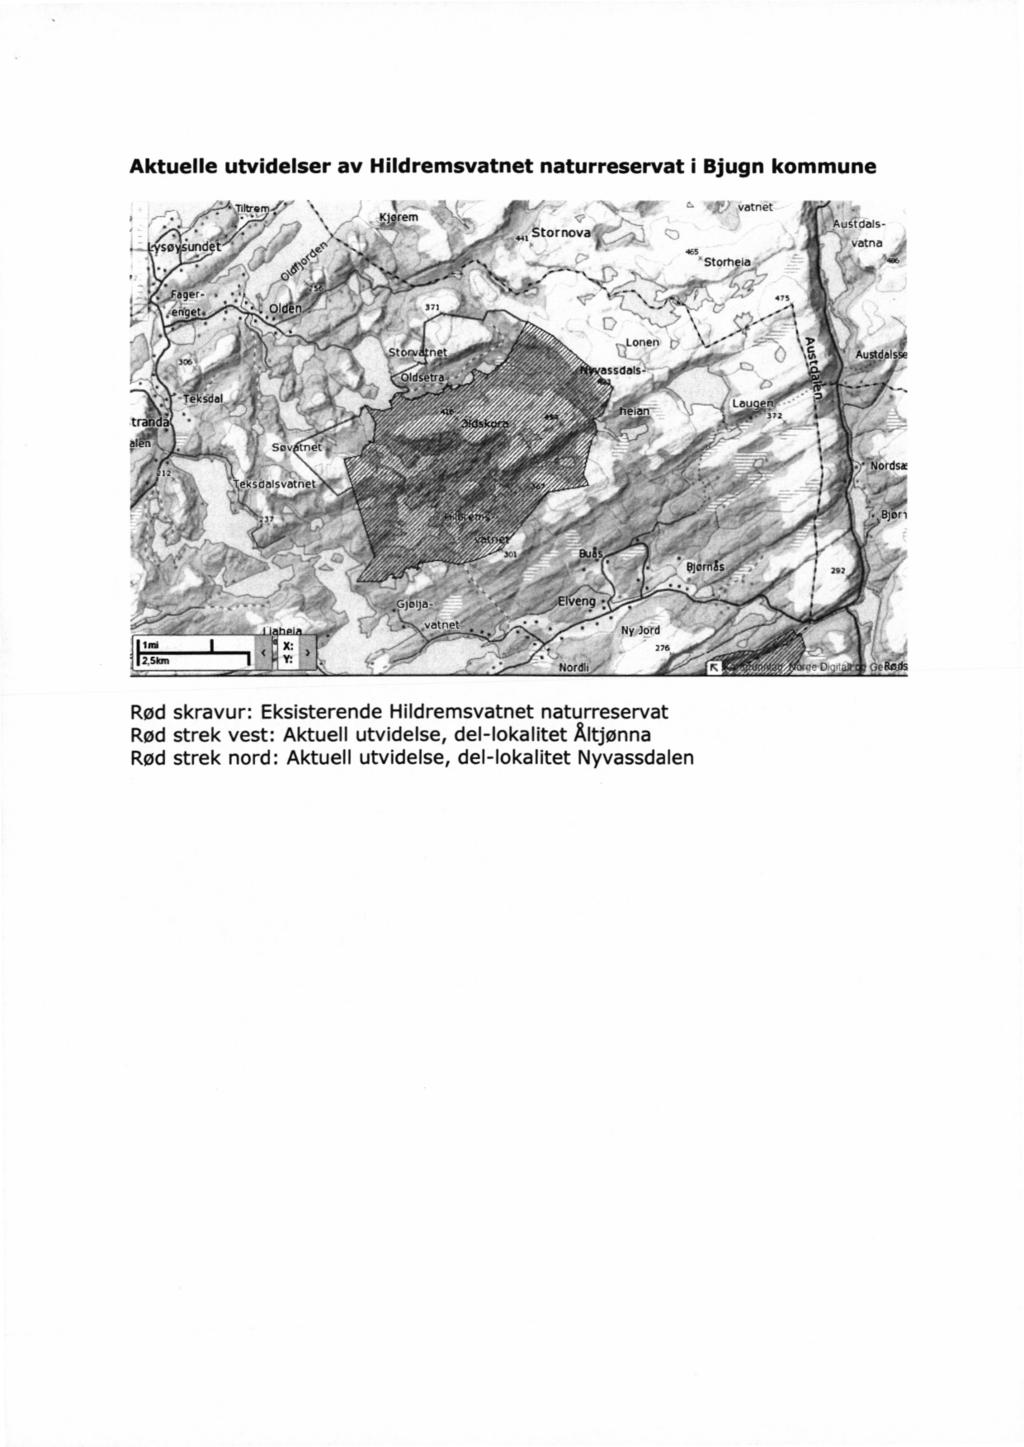 Aktuelle utvidelser av Hildremsvatnet naturreservat i Bjugn kommune N, ~`~ vatnet f ~'.. ' f - s.._-; _AusmaIs- na J: 465, _' f; vat. 'Stom ia i \{"' _* N* 7",. ` 'fff flu. - E* - 1 n».. I».